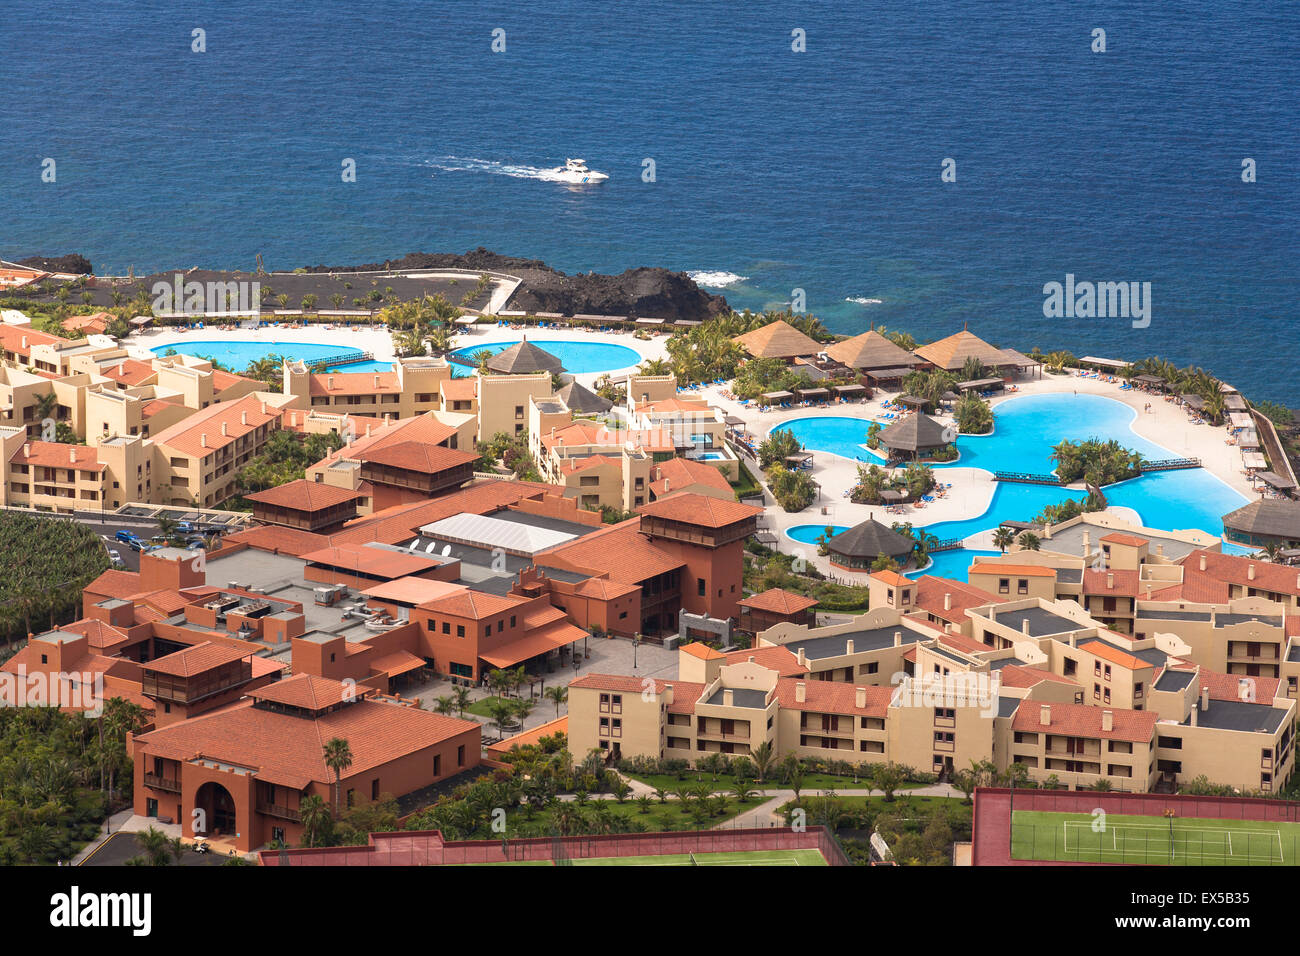 ESP, Spagna, Canarie, l'isola di La Palma, l'Hotel Teneguia Princess e La Palma Princess presso la costa occidentale nei pressi di La Foto Stock